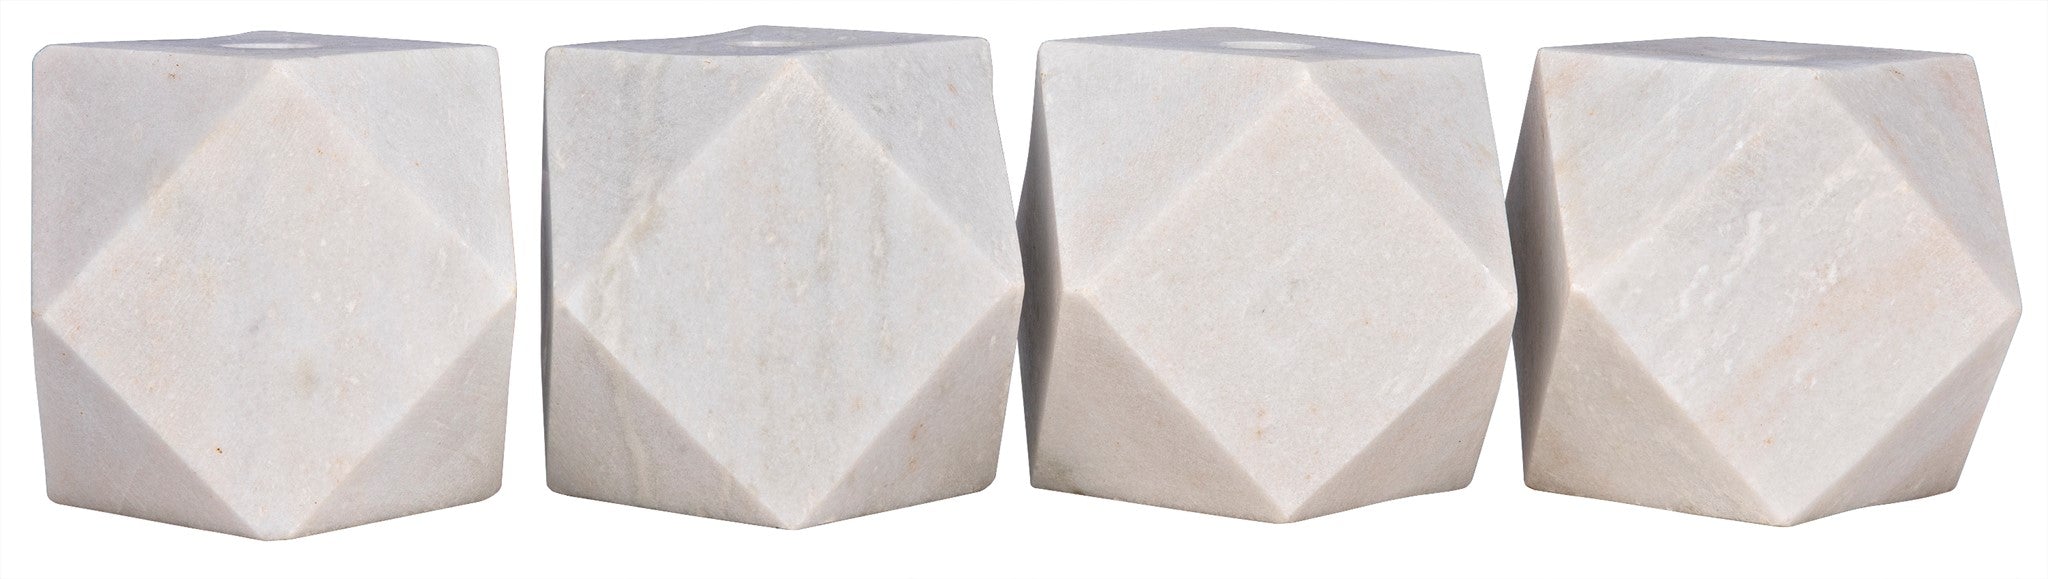 Polyhedron Decorative Candle Holder, Set of 4 - White - - Decor - Tipplergoods